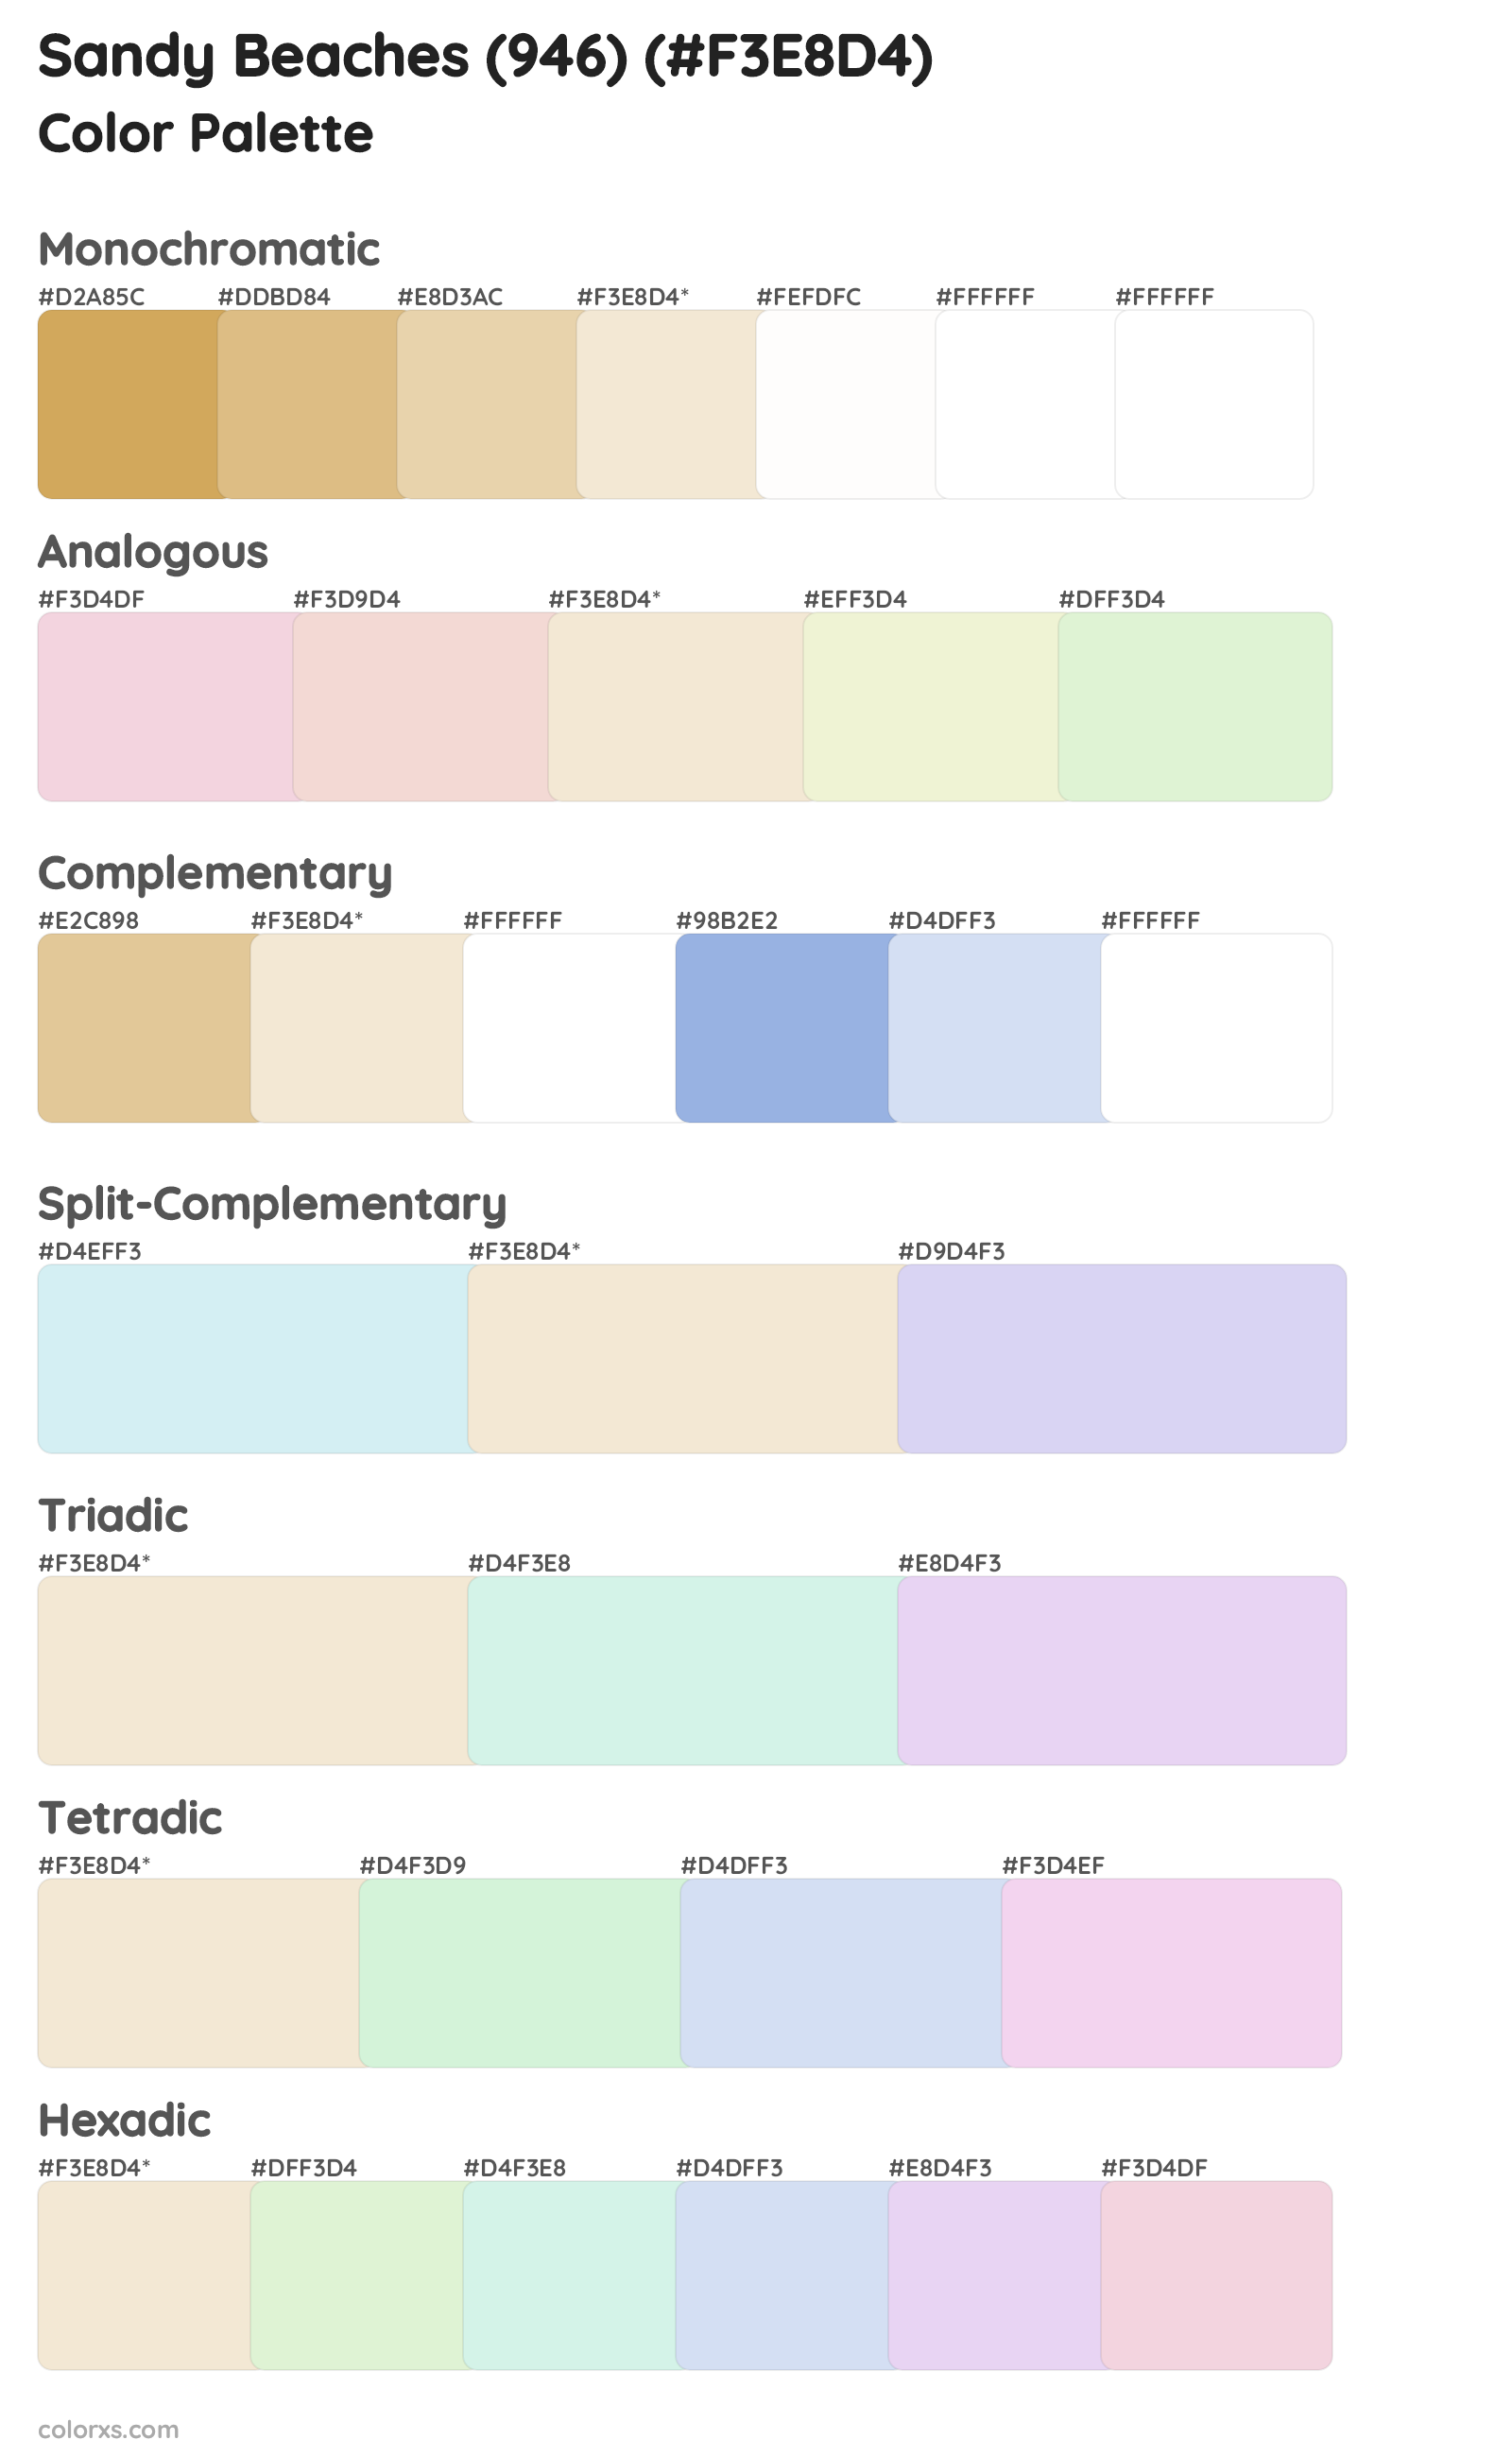 Sandy Beaches (946) Color Scheme Palettes